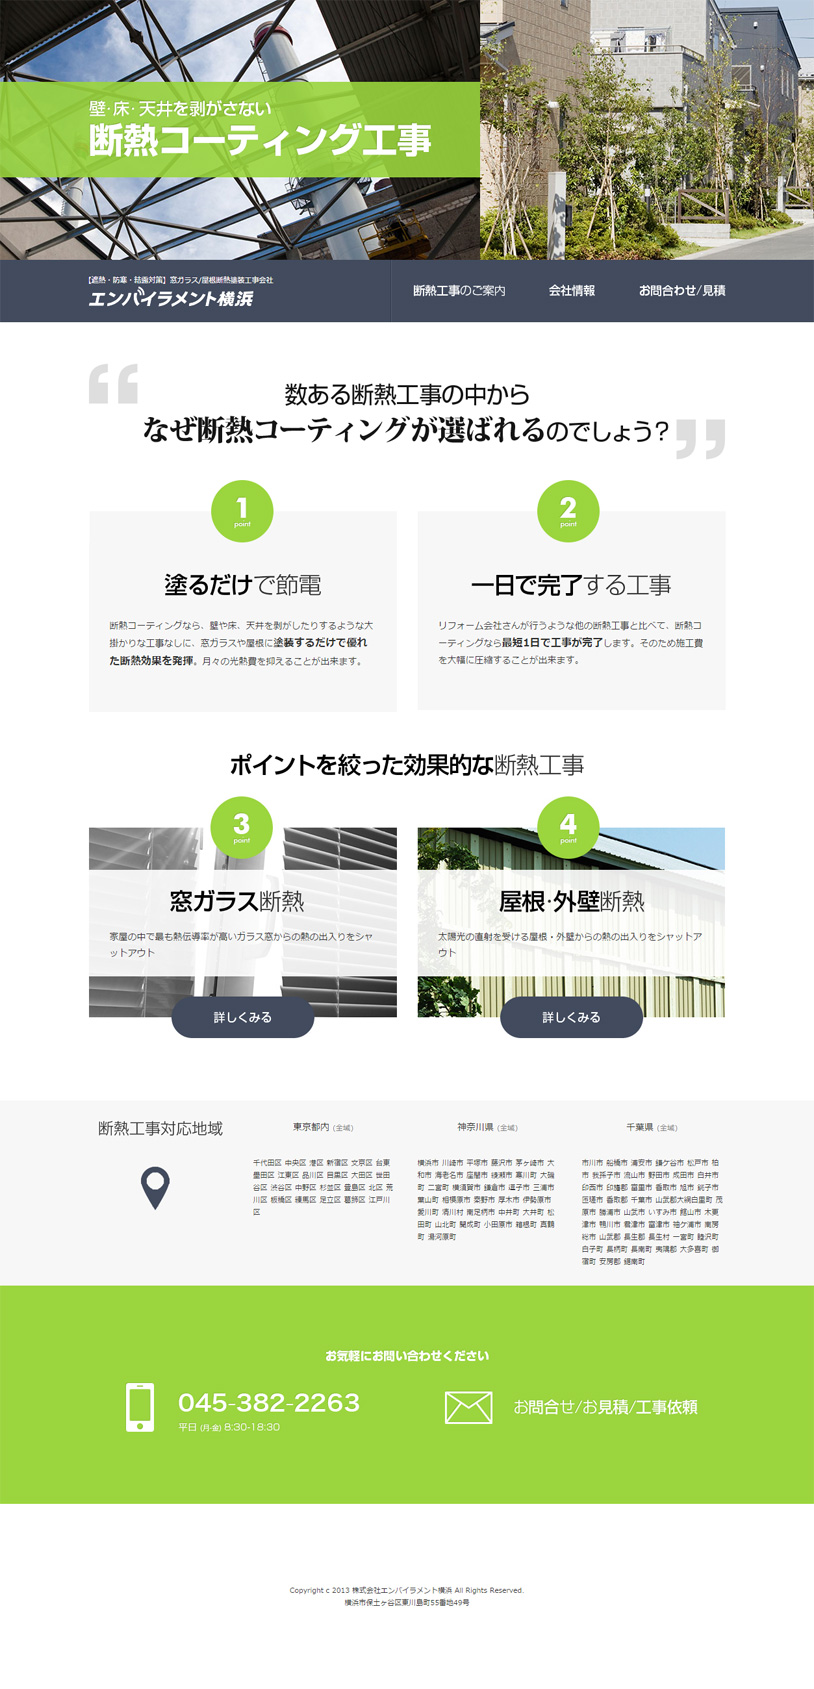 エンバイラメント横浜様Webサイトデザイン